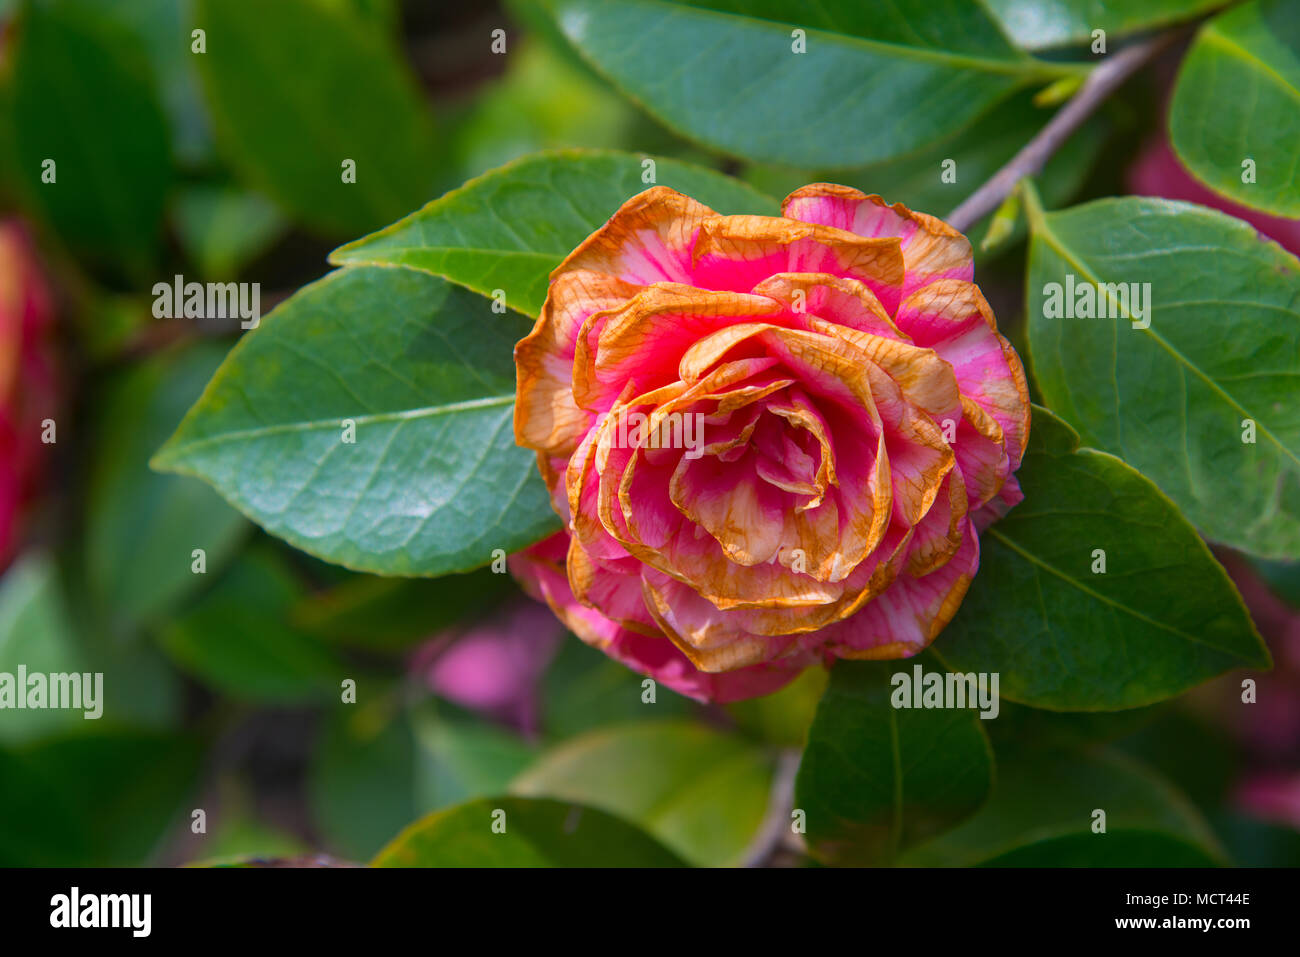 Whitered camellia flower. Stock Photo